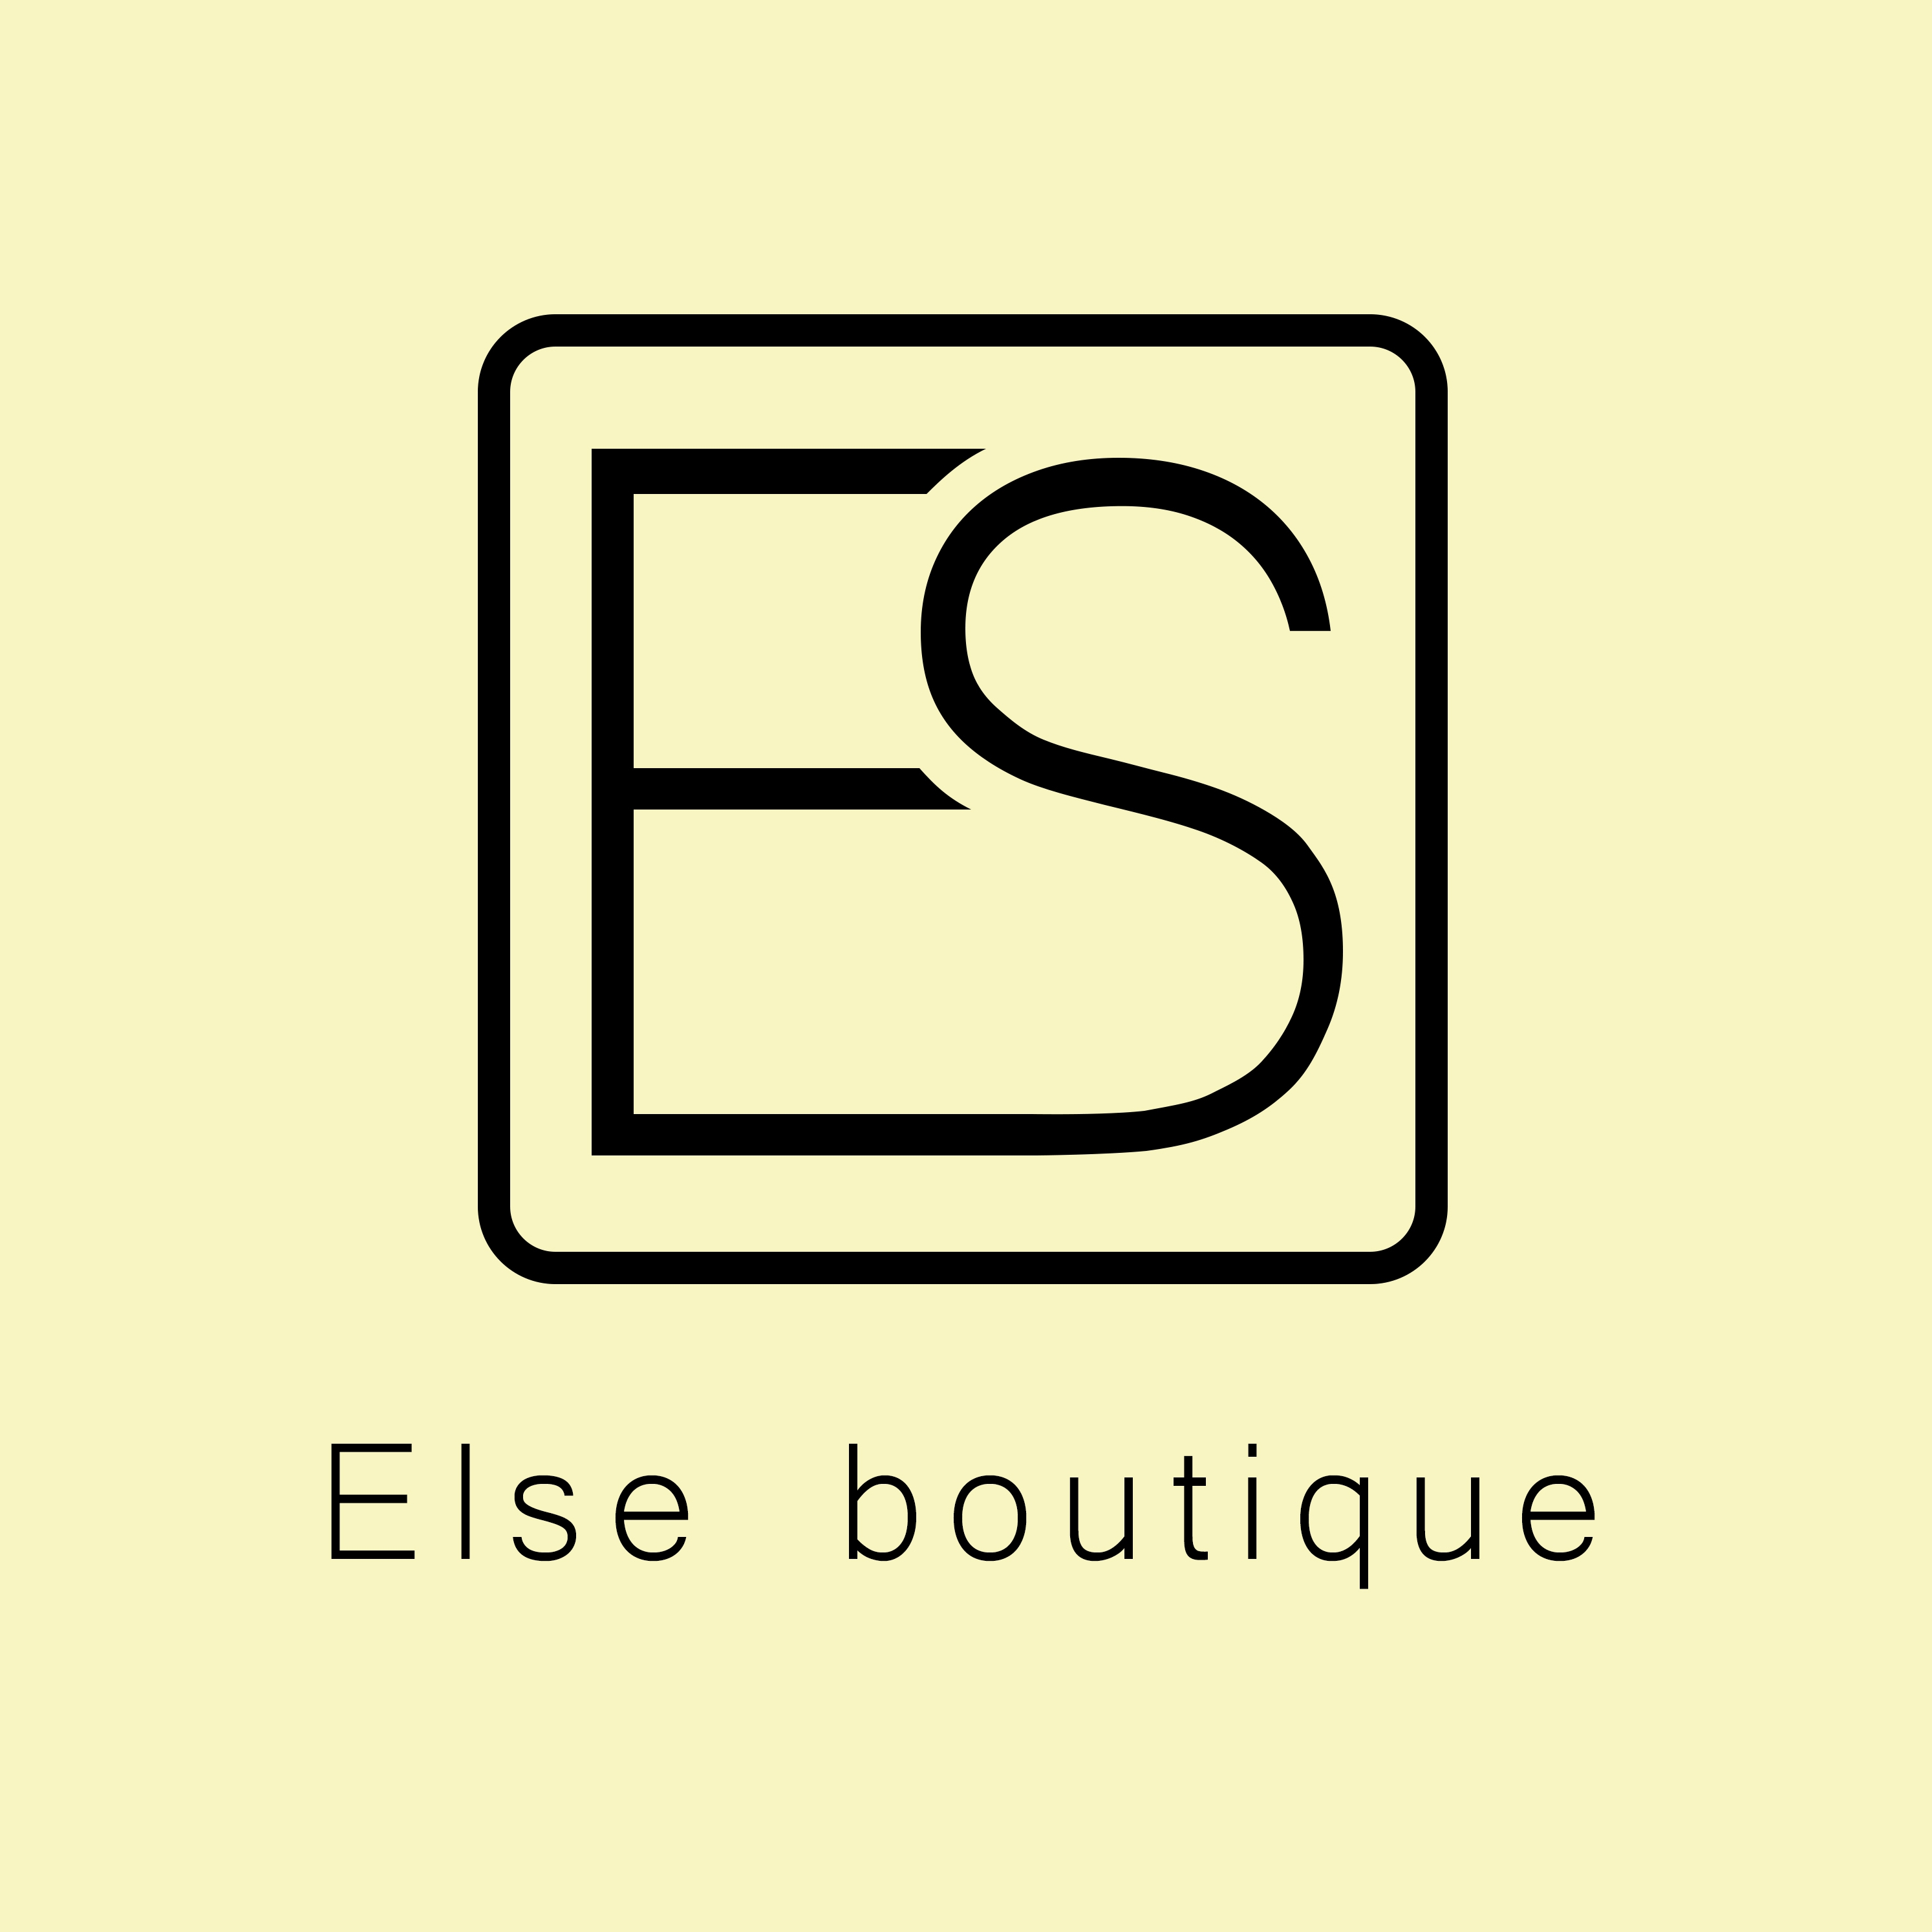 嘉兴Else boutique 设计师品牌集合店